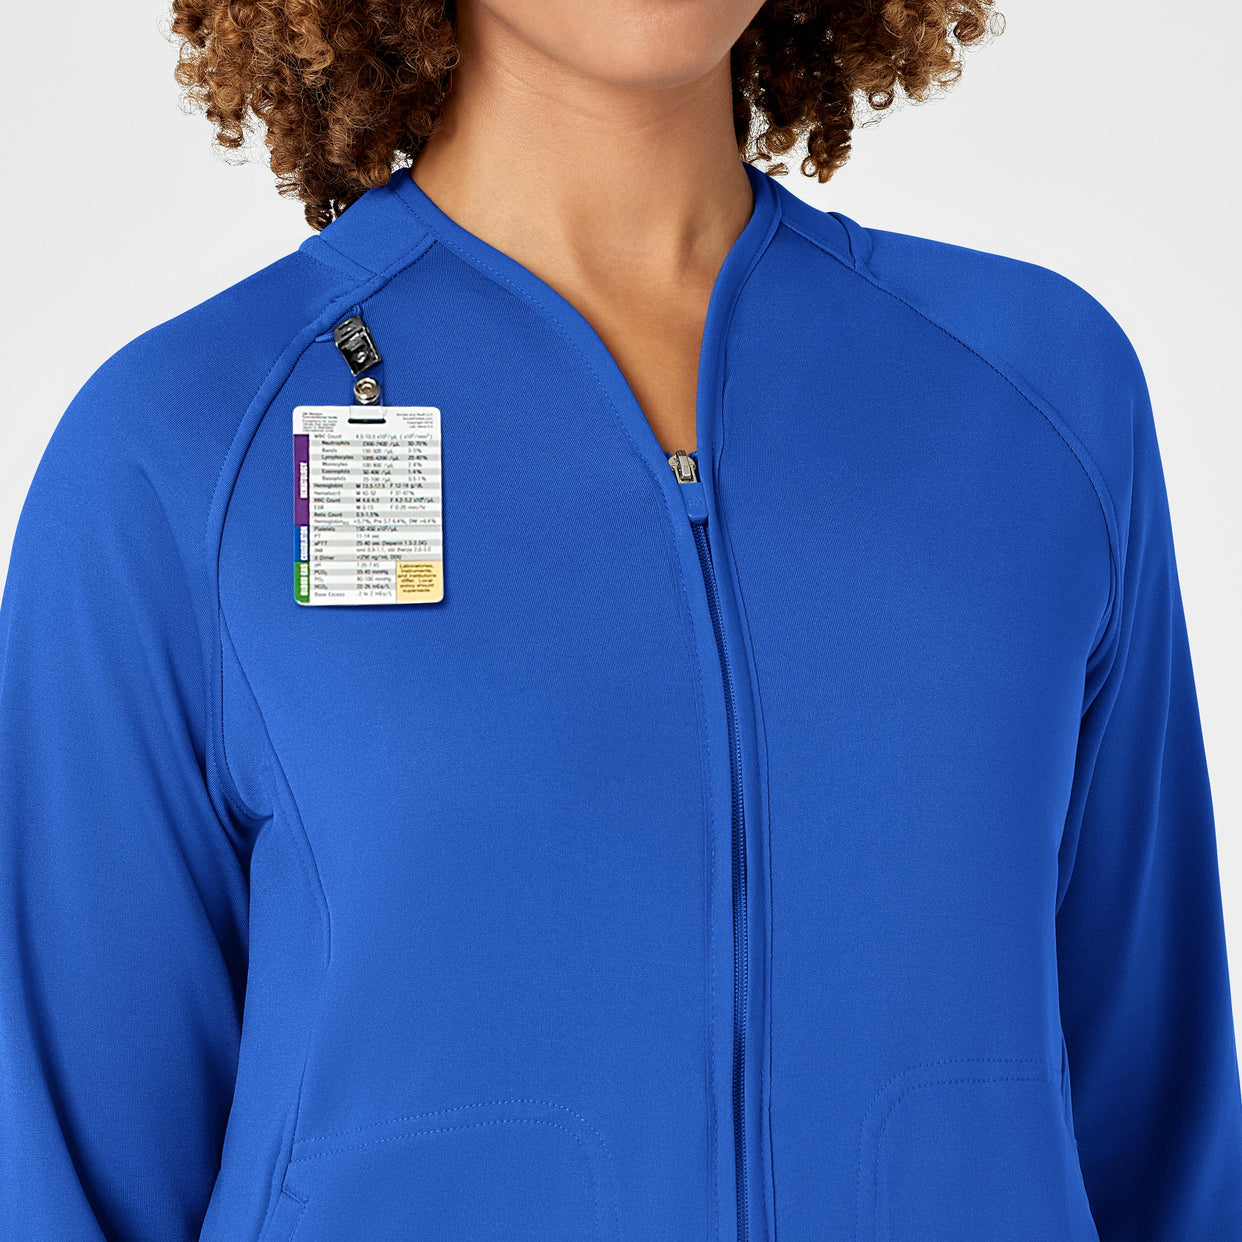 Women's Fleece Full Zip Jacket - Royal